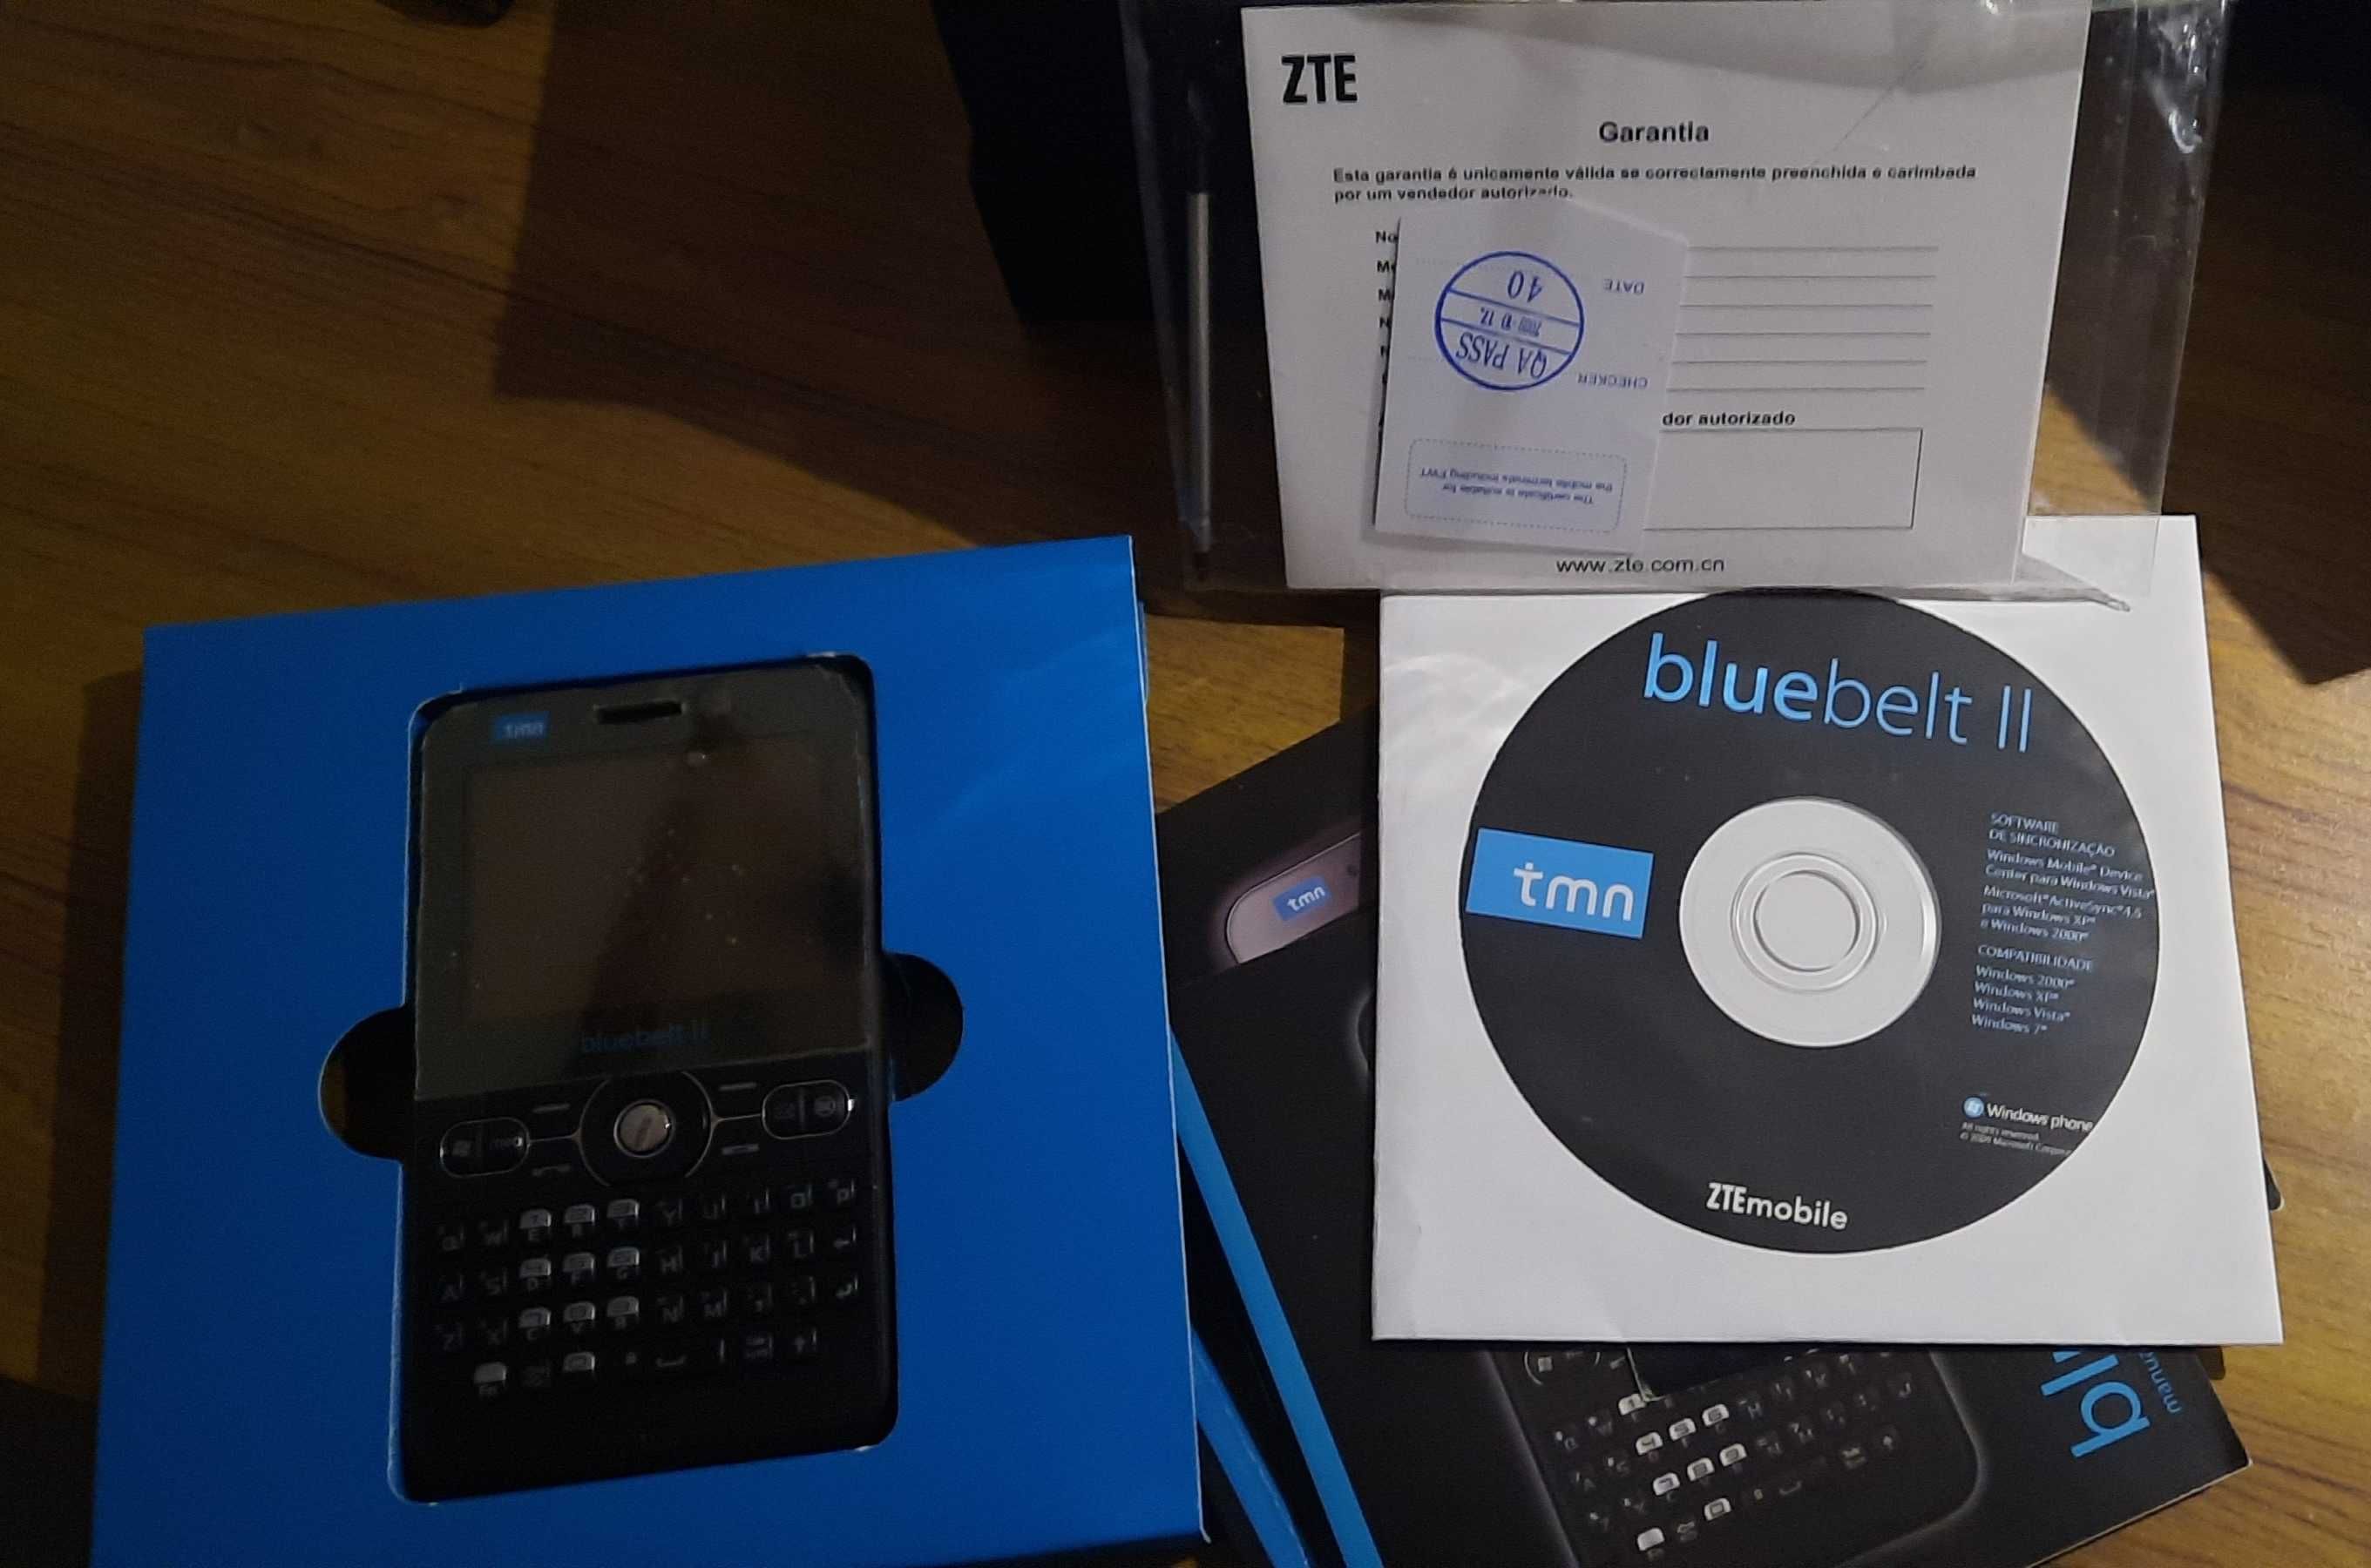 Windows Phone - ZTE bluebelt II